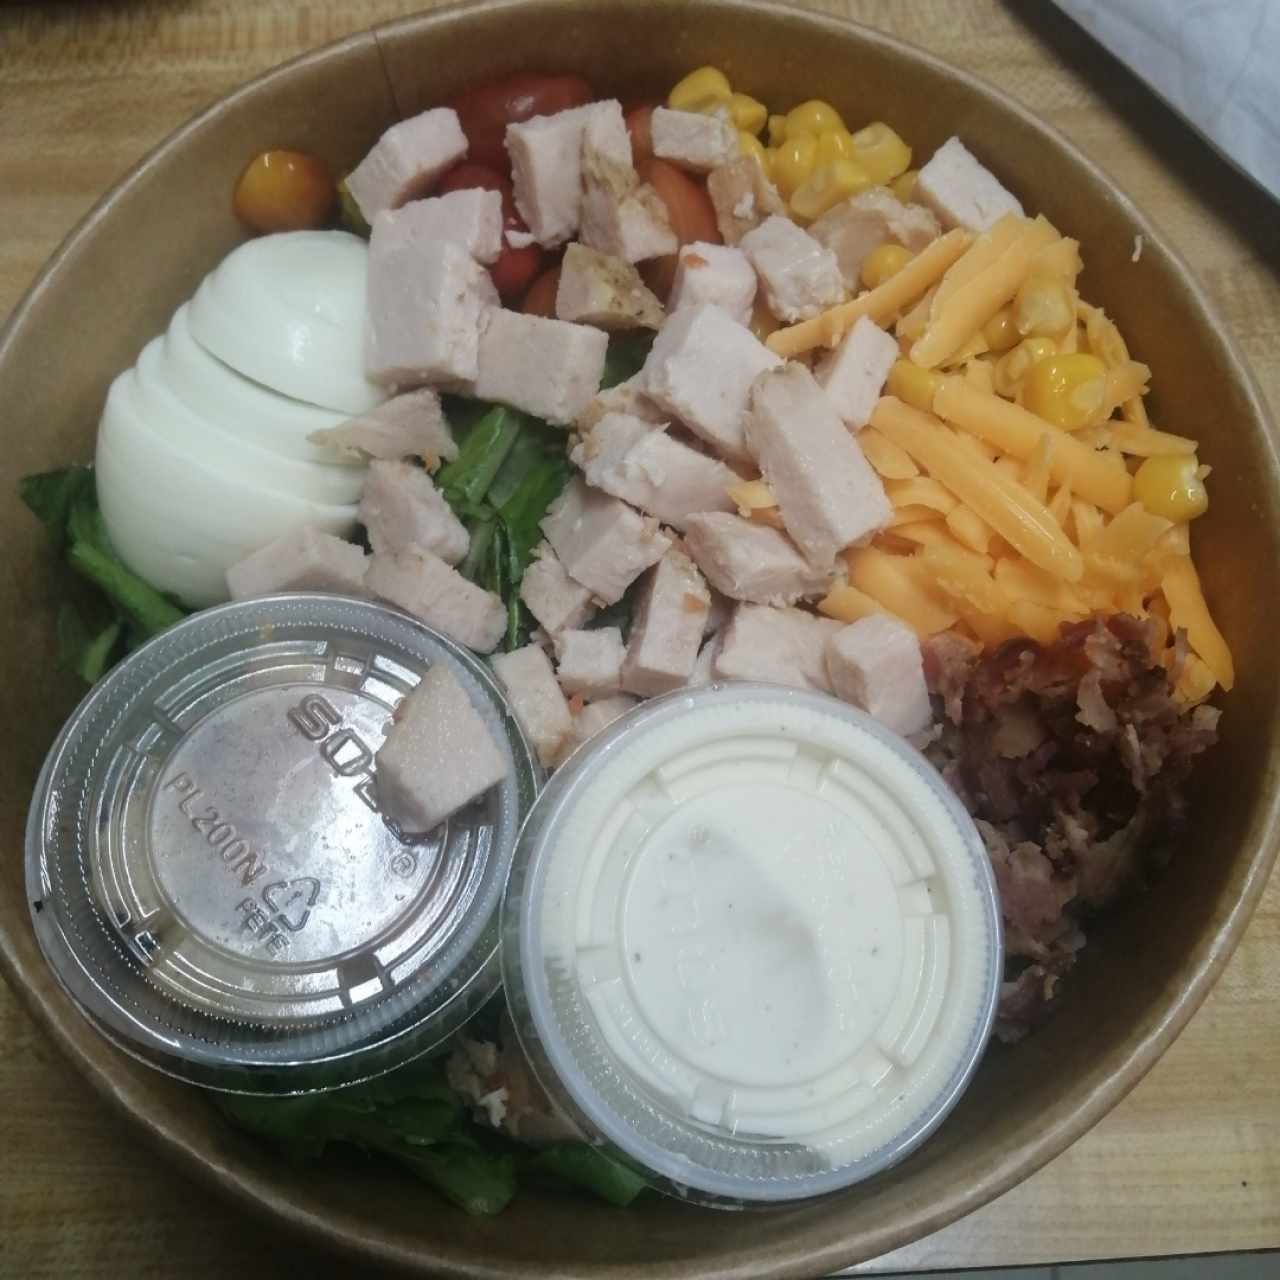 Cobb Salad 